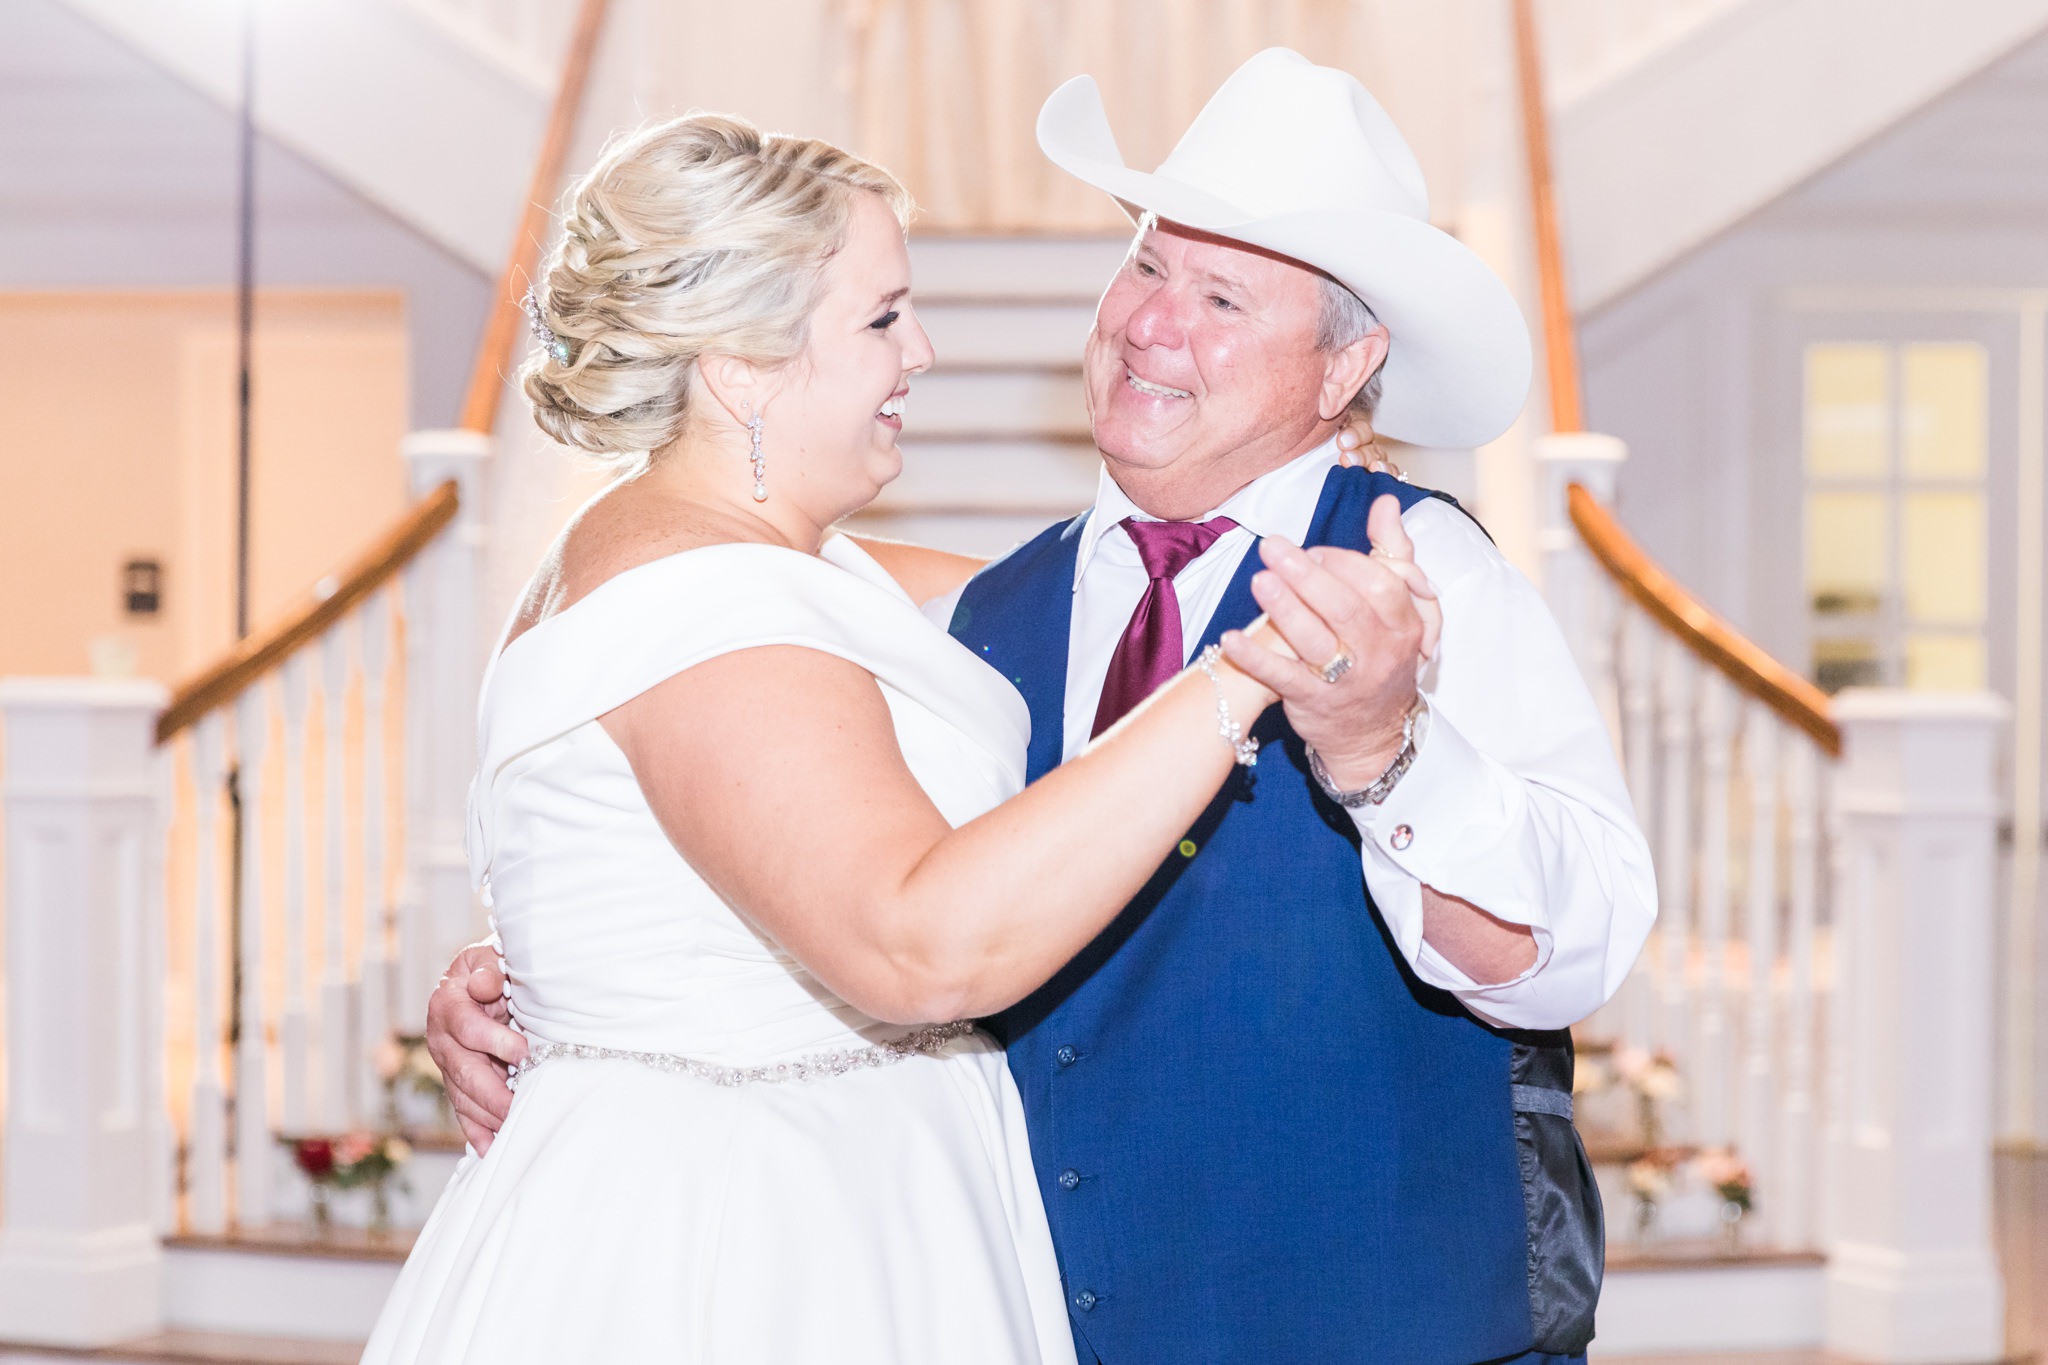 A Burgundy & Blush Wedding at Kendall Point in Boerne, TX by Dawn Elizabeth Studios, San Antonio Wedding Photographer